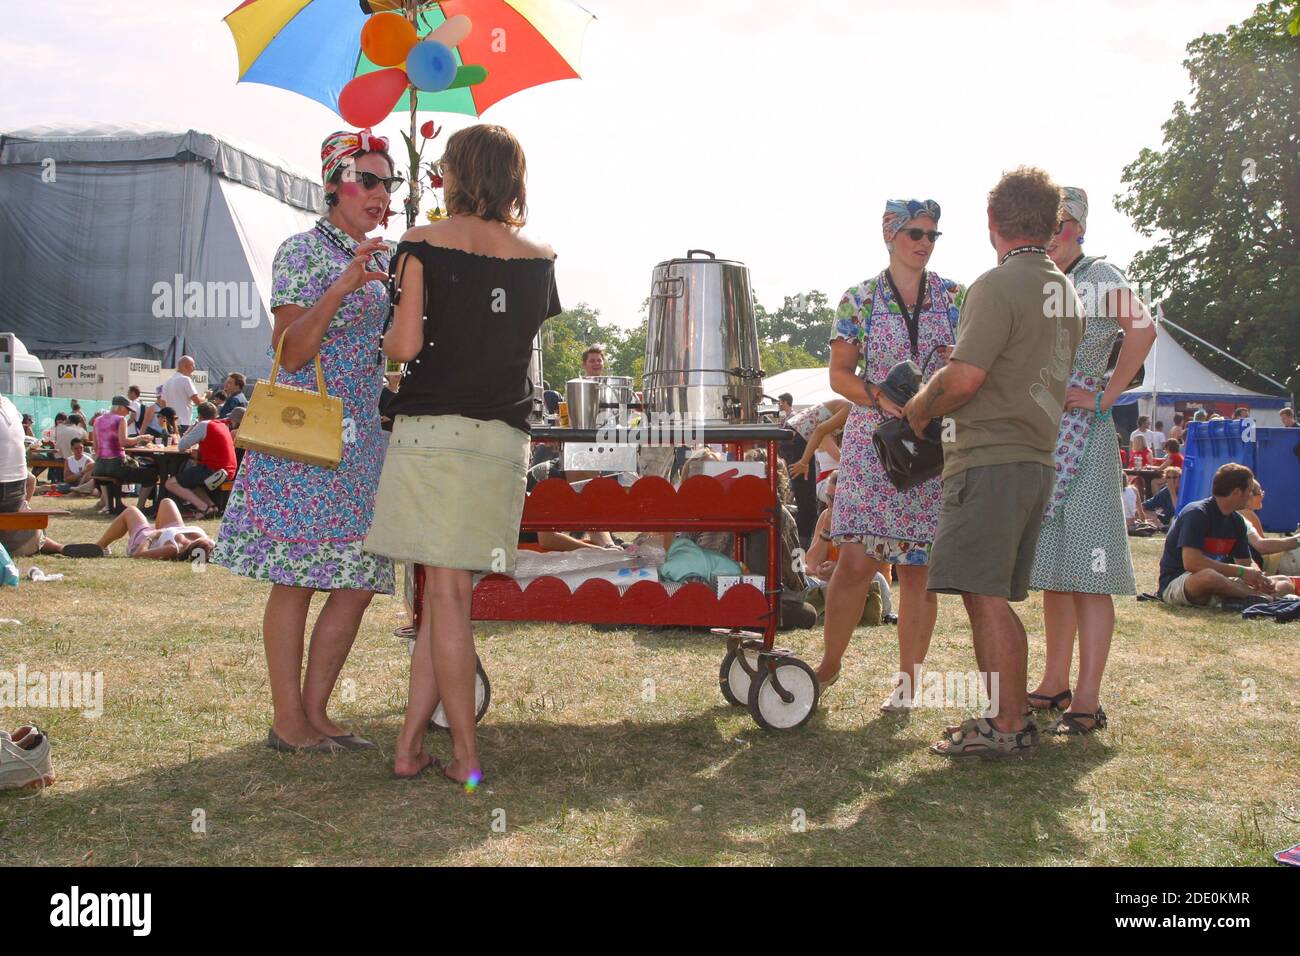 Déguisement déguisement de thé dames au V2003 Festival, Hylands Park, Chelmsford, Essex, Angleterre, Royaume-Uni. Banque D'Images